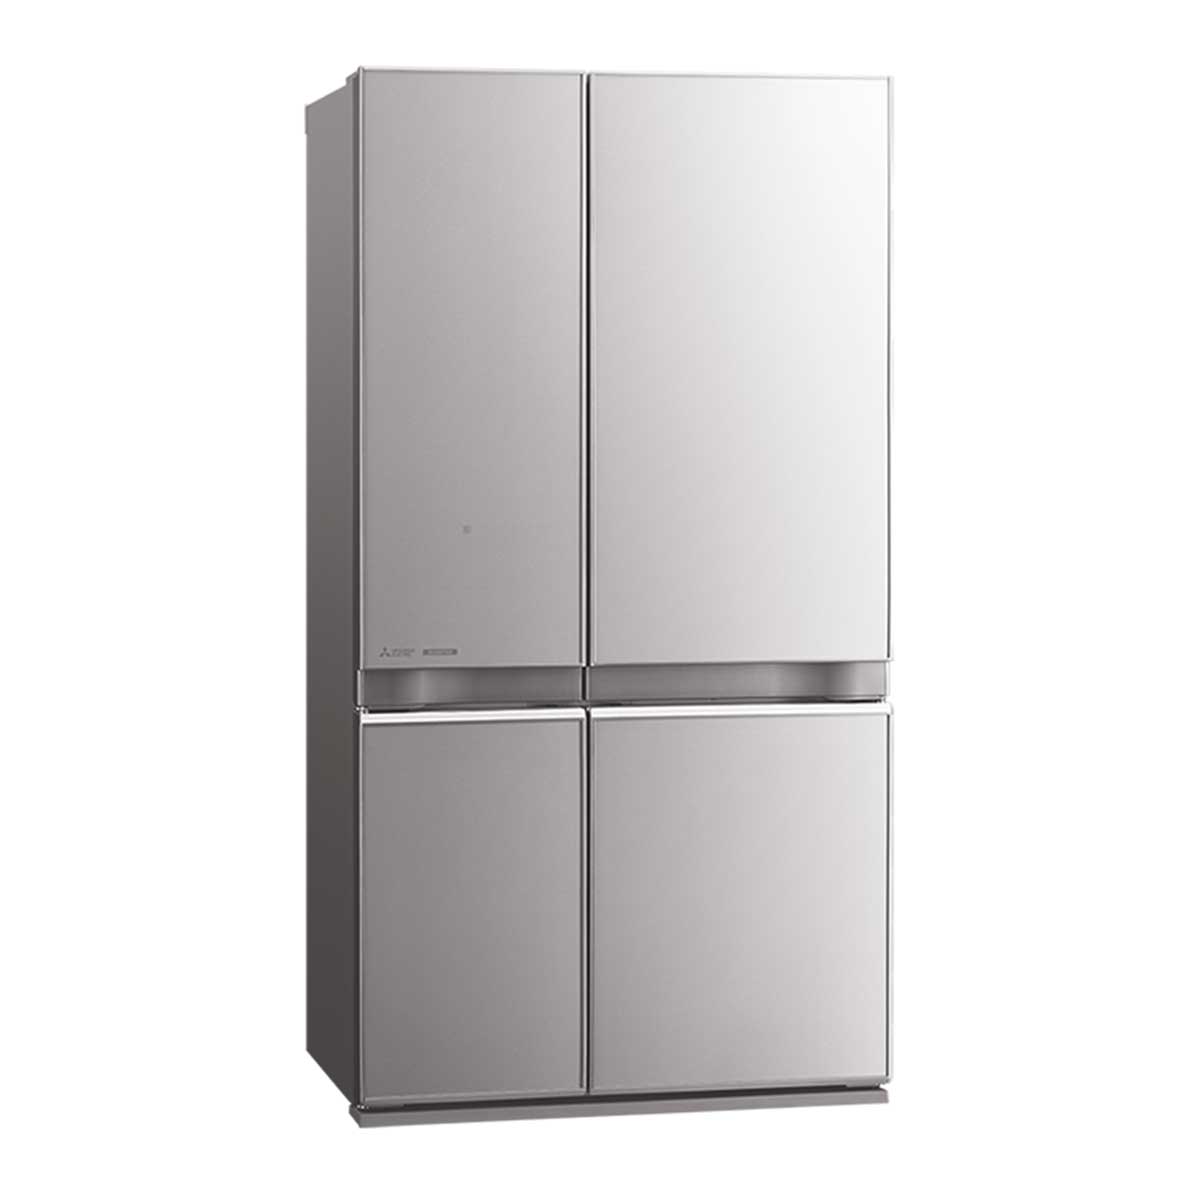 Tủ lạnh Mitsubishi MR-LA72ER-GSL-V 580 lít Inverter màu bạc ánh kim